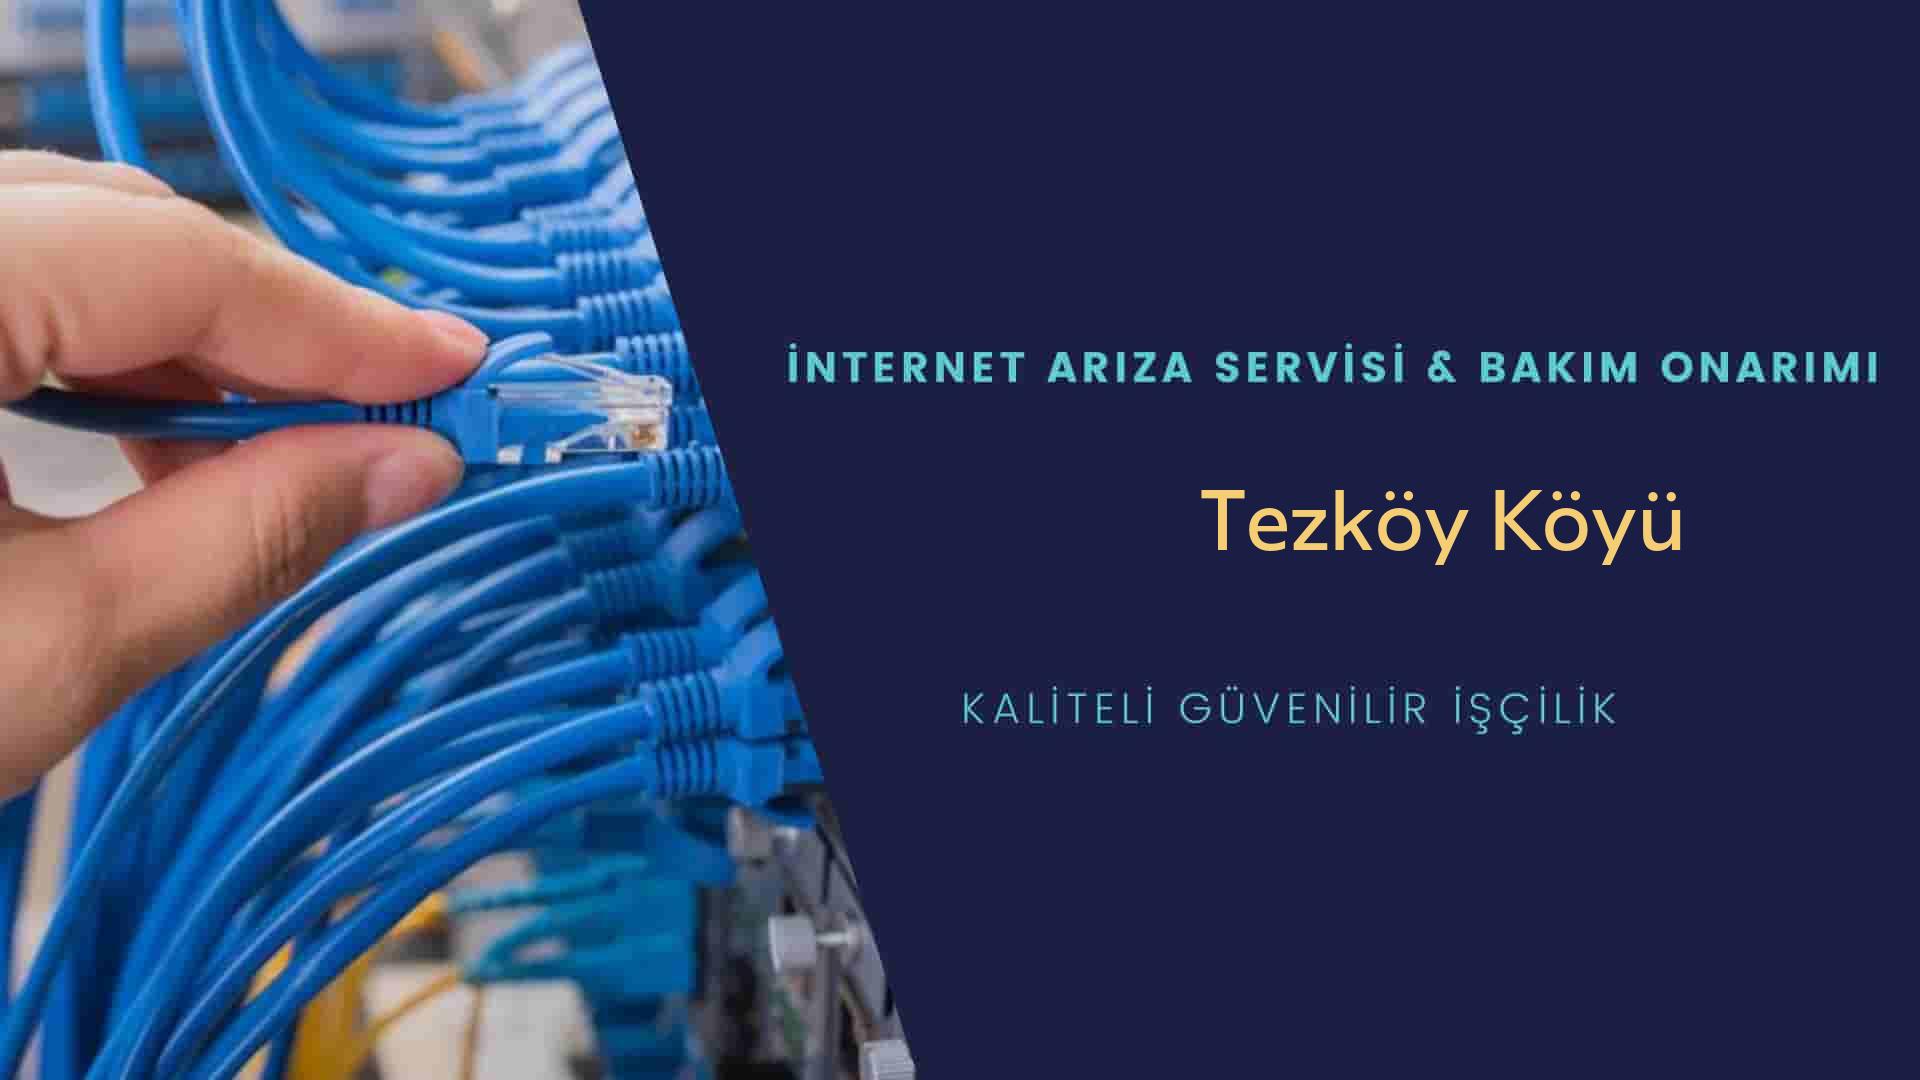 Tezköy Köyü internet kablosu çekimi yapan yerler veya elektrikçiler mi? arıyorsunuz doğru yerdesiniz o zaman sizlere 7/24 yardımcı olacak profesyonel ustalarımız bir telefon kadar yakındır size.